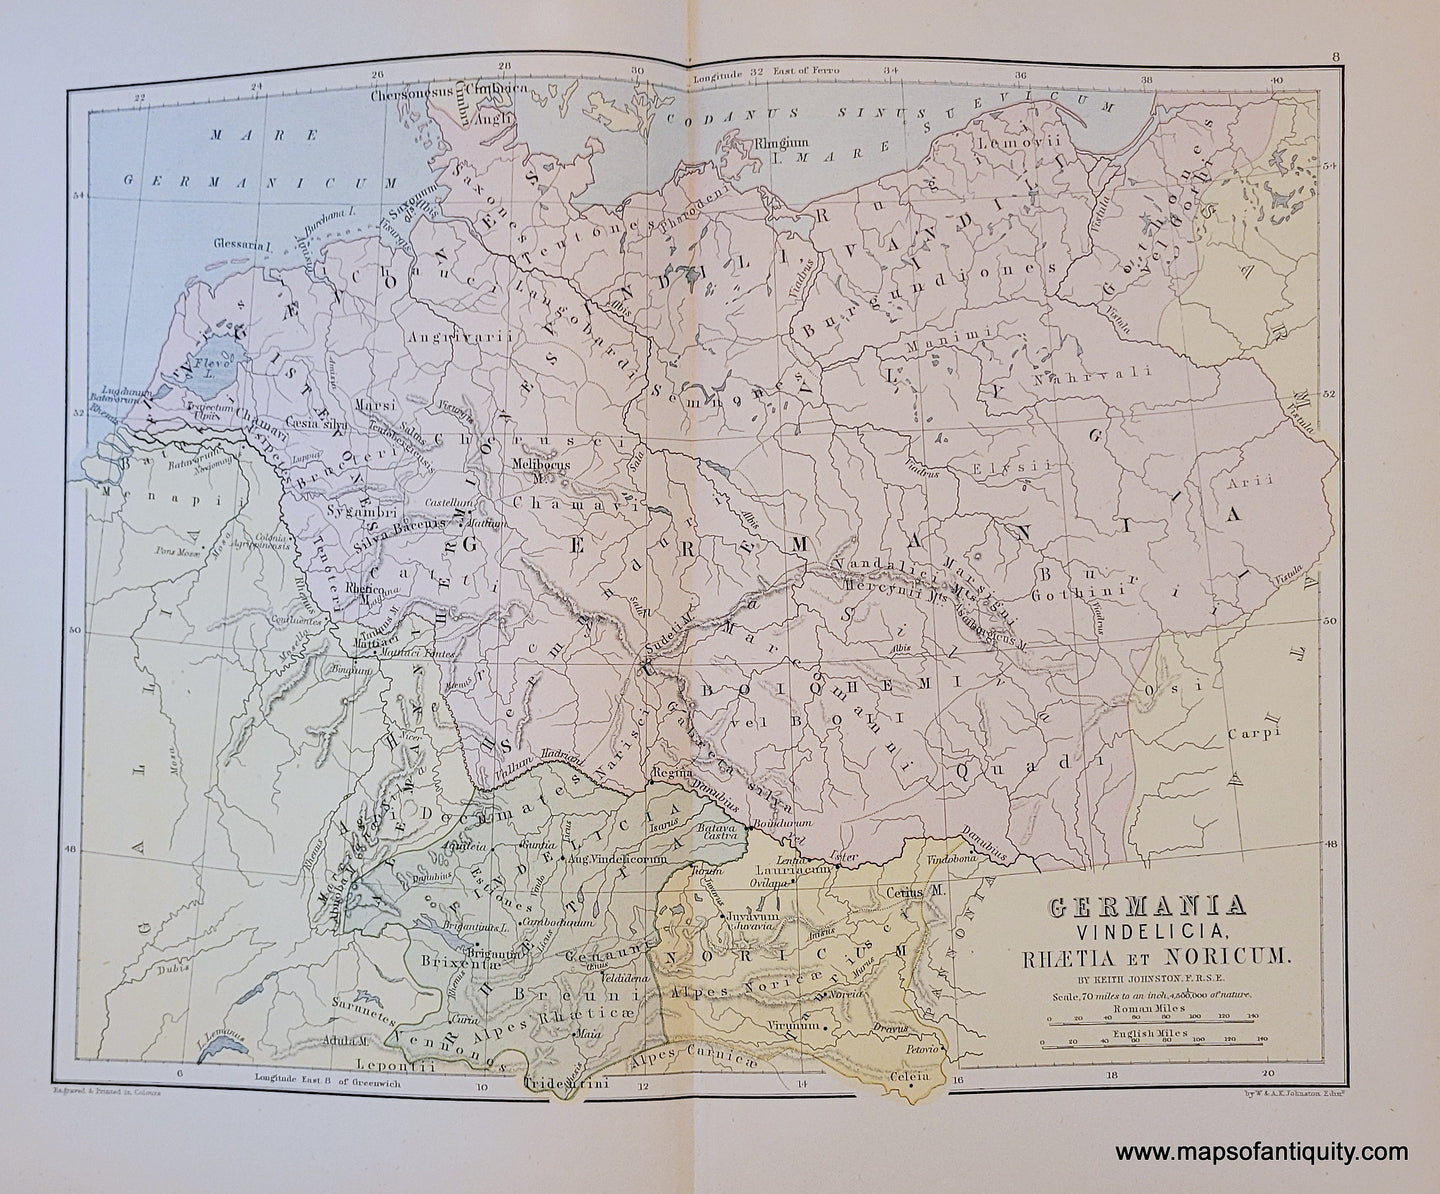 Genuine-Antique-Map-Germania-Vindelicia-Rhaetia-et-Noricum-Germany-and-Poland-1910-Johnston-Maps-Of-Antiquity